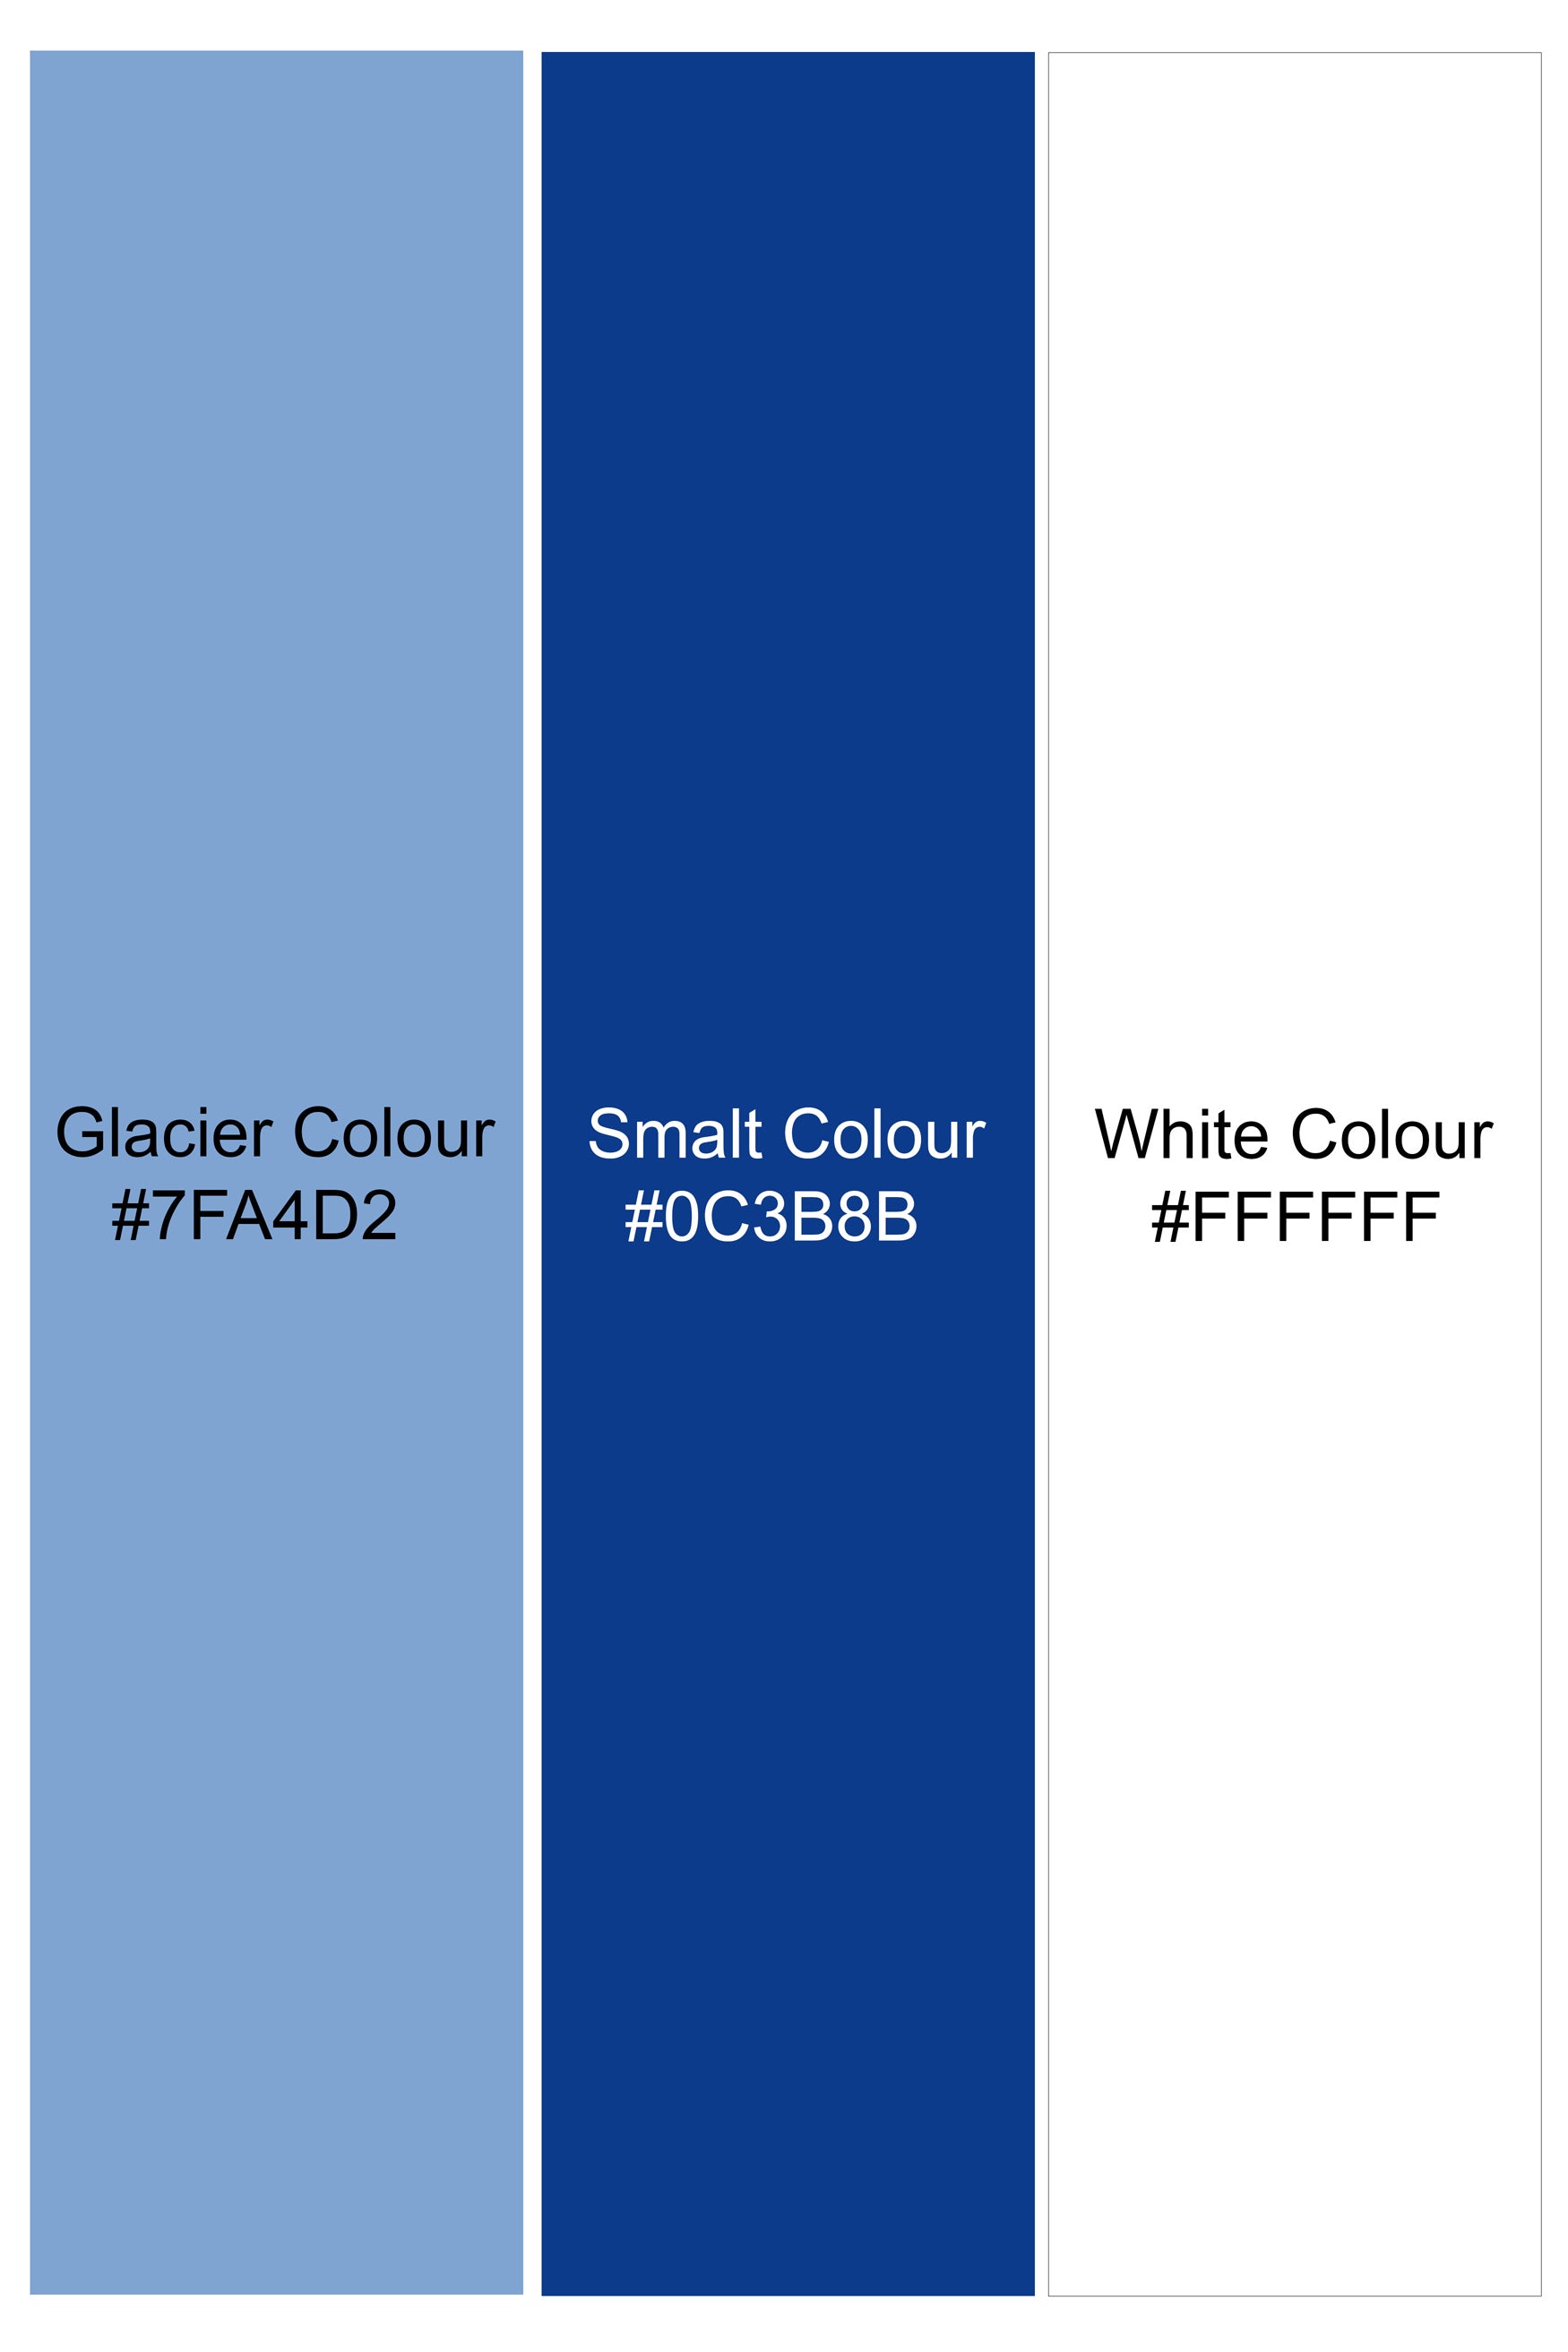 Glacier Blue Printed Twill Premium Cotton Shorts SR385-28, SR385-30, SR385-32, SR385-34, SR385-36, SR385-38, SR385-40, SR385-42, SR385-44